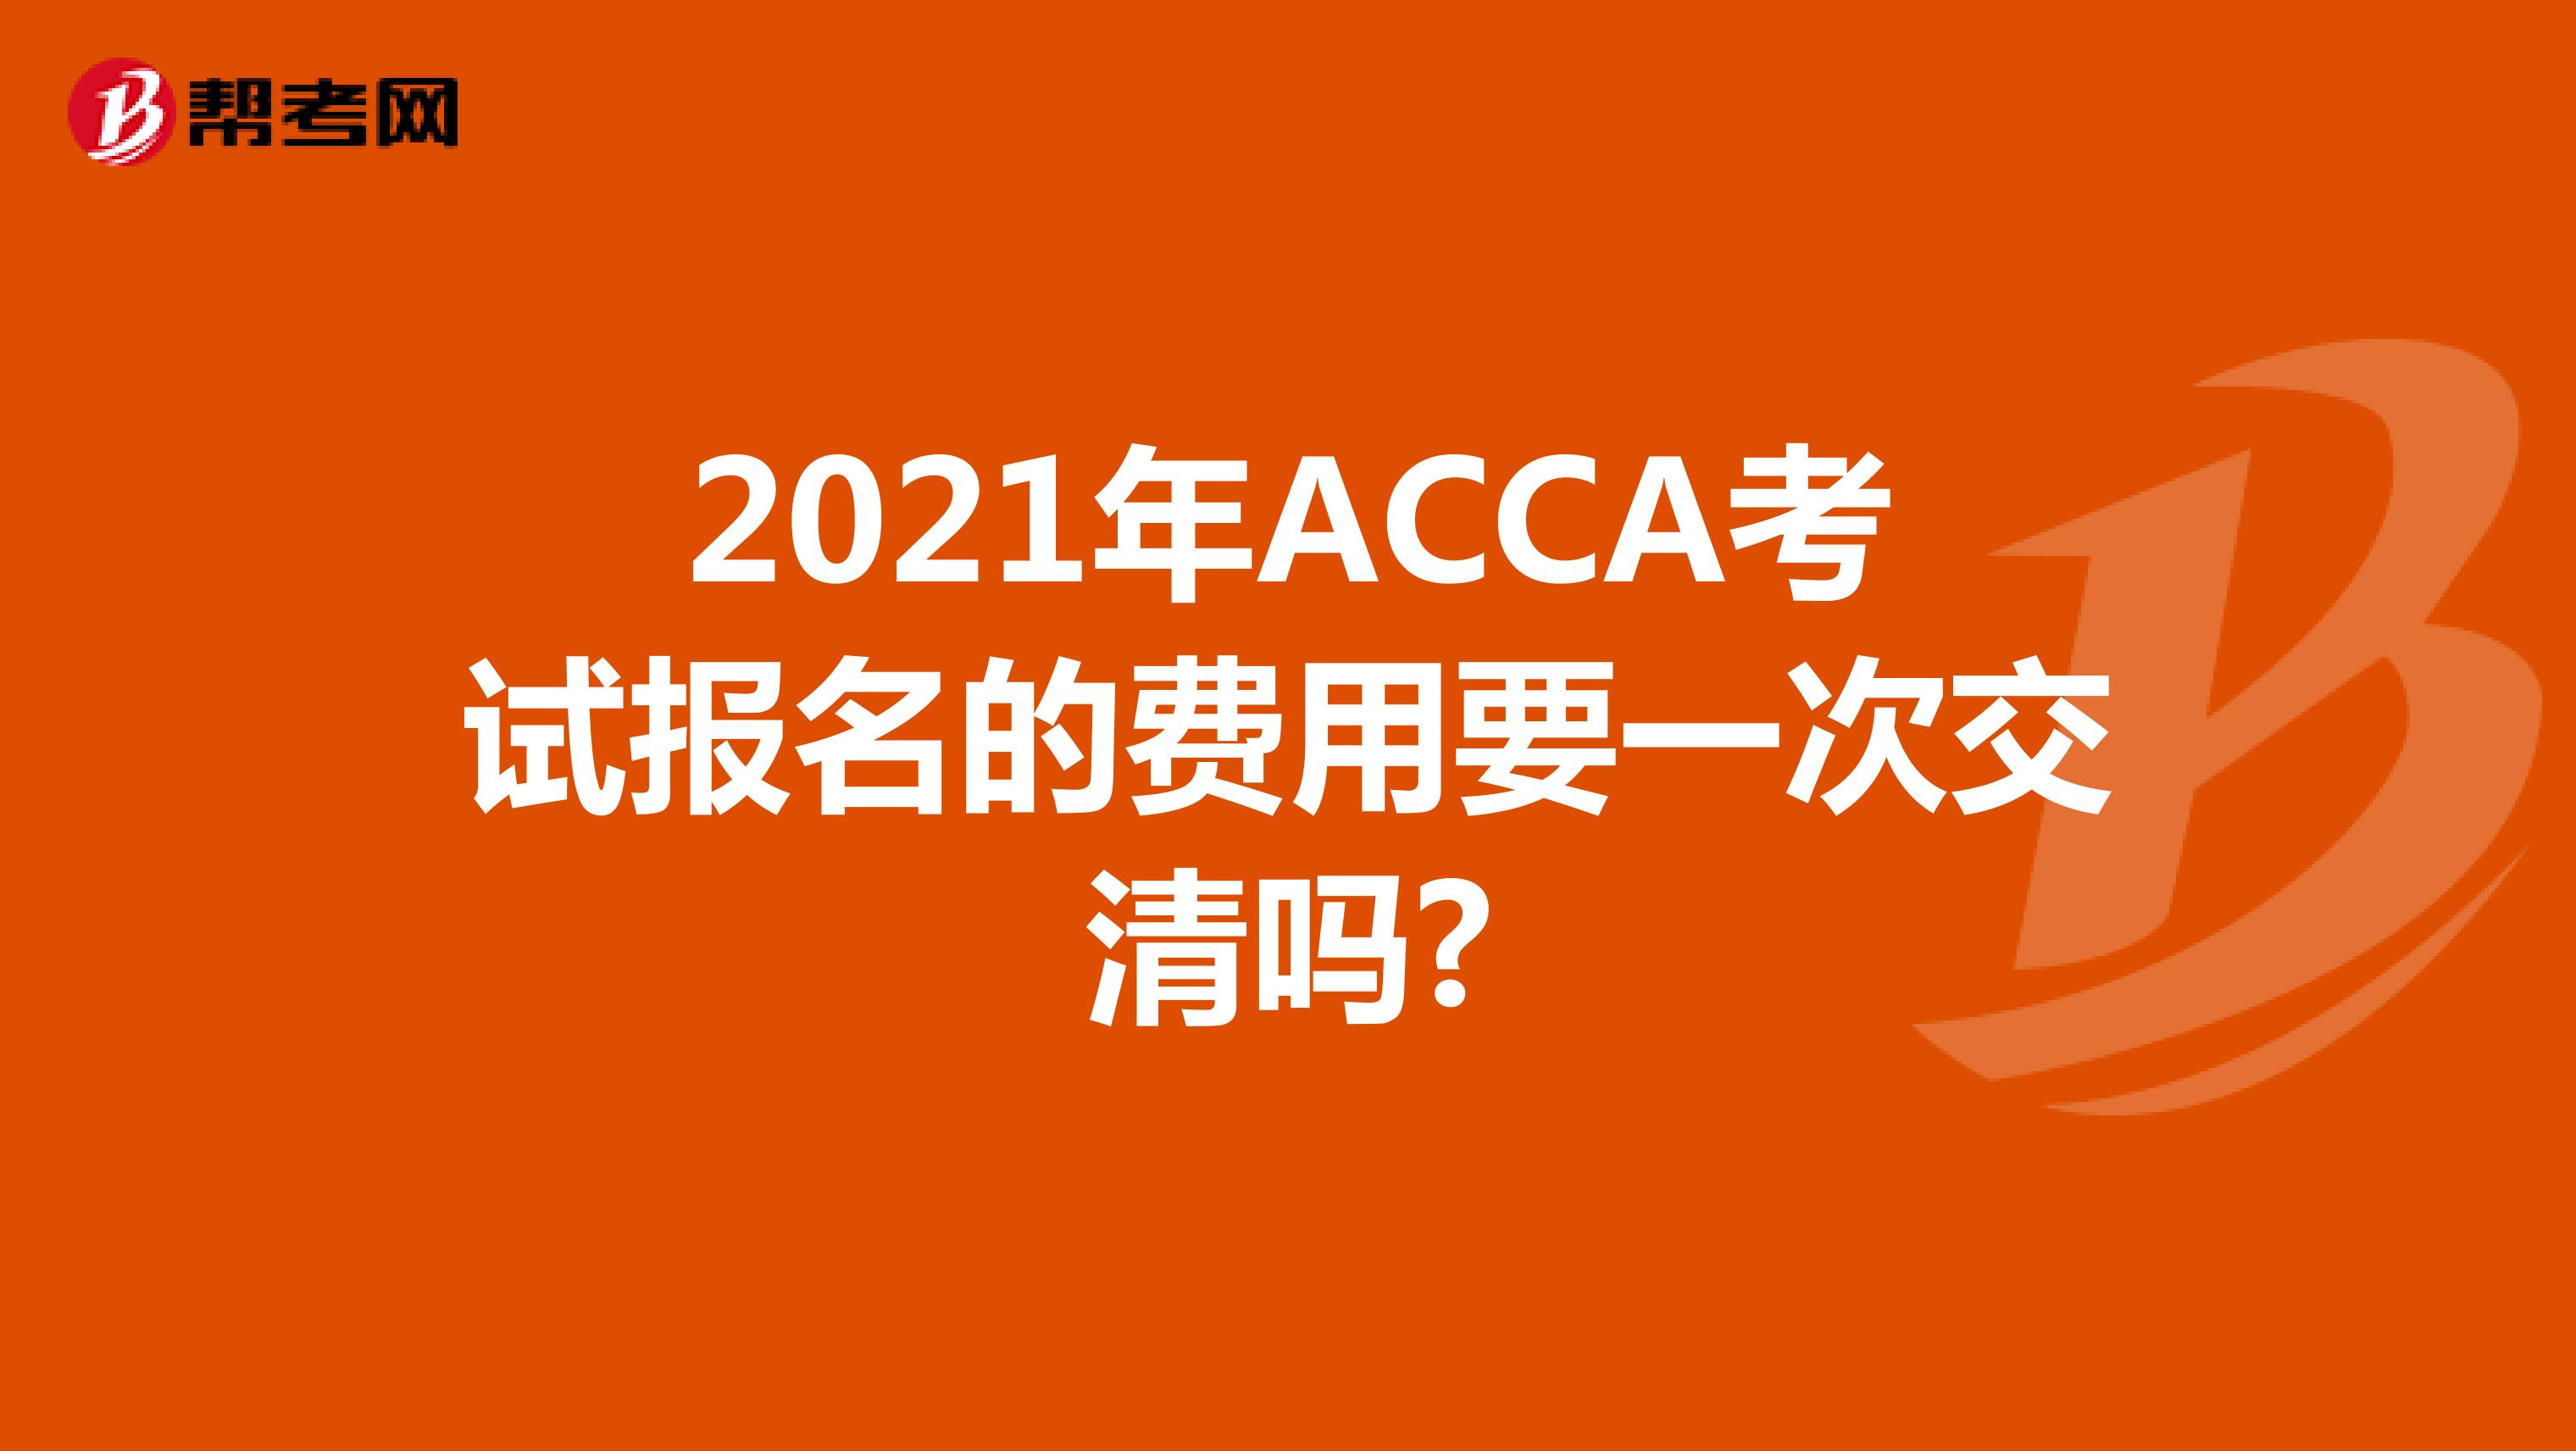 2021年ACCA考试报名的费用要一次交清吗?